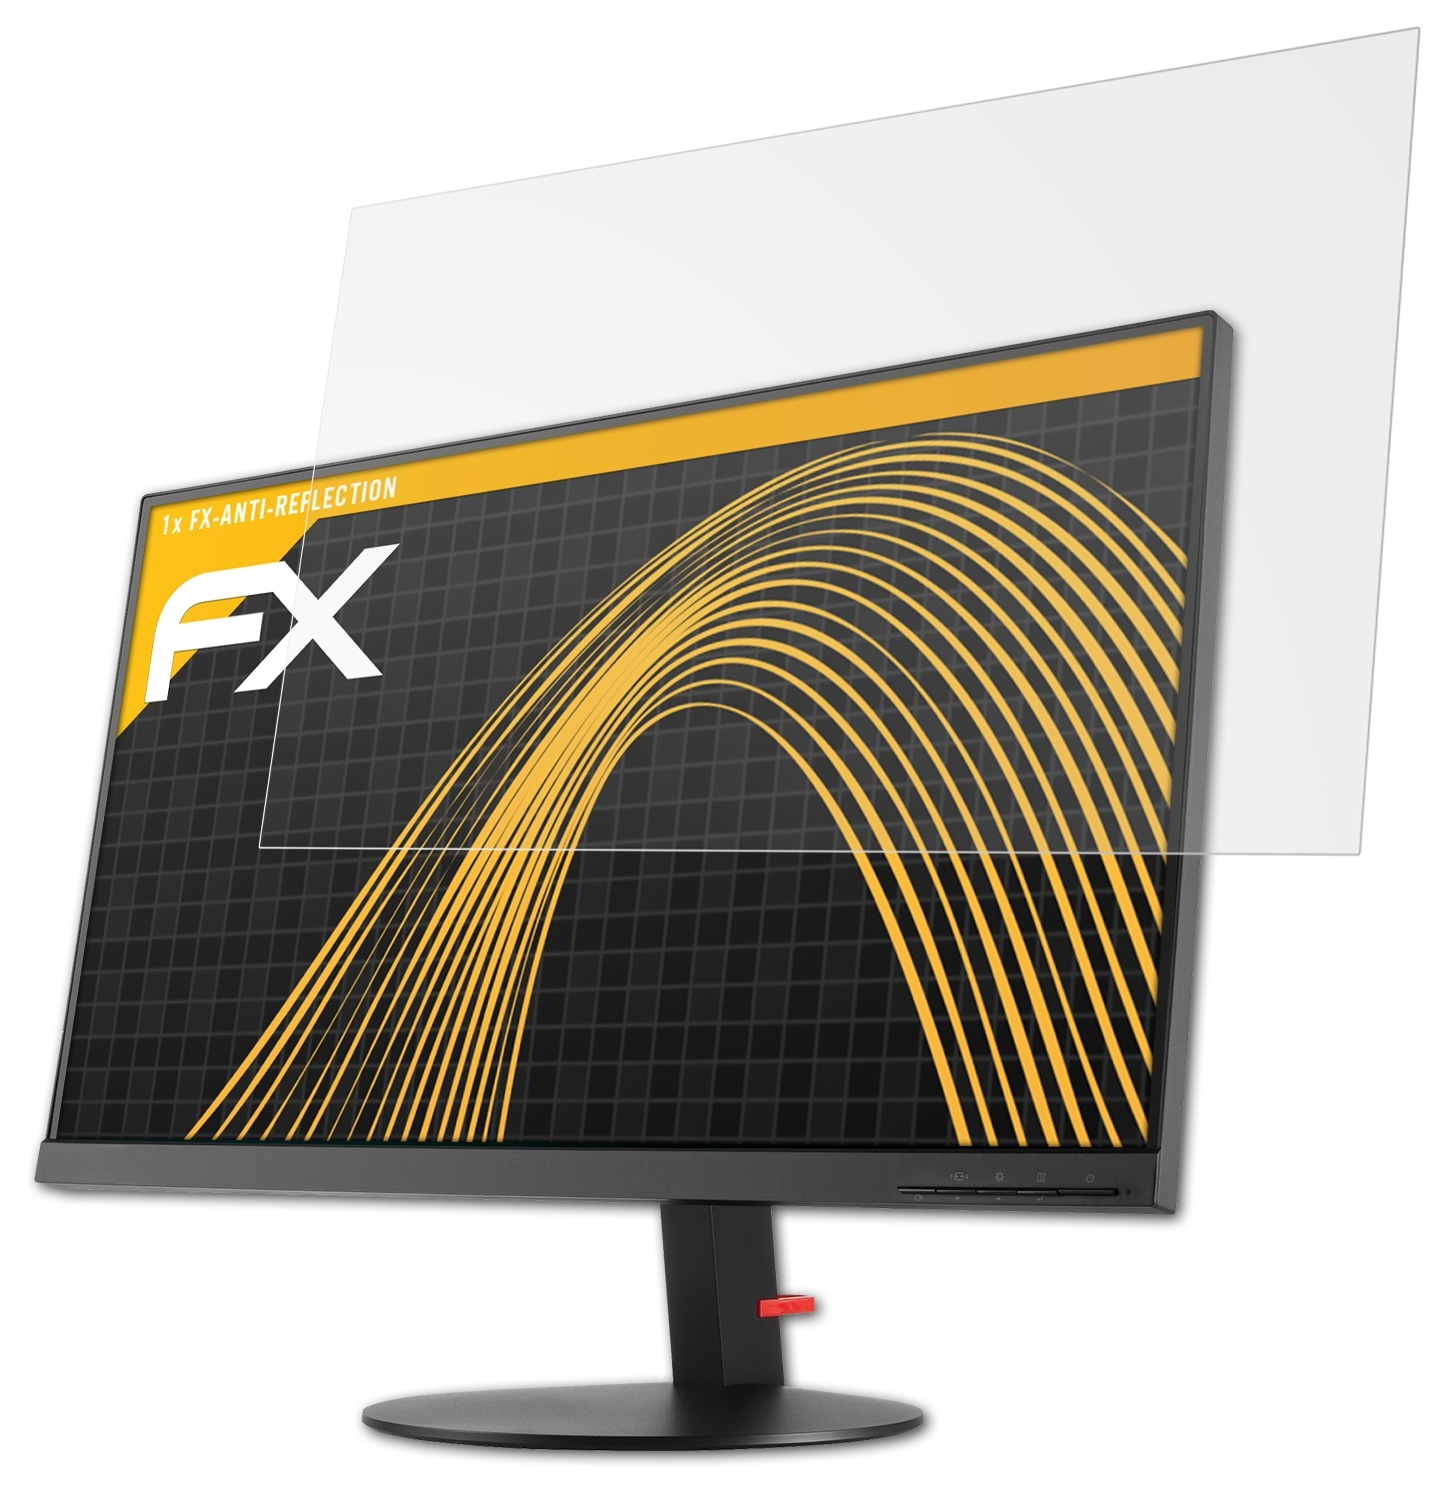 P27h-10) Displayschutz(für ATFOLIX ThinkVision Lenovo FX-Antireflex